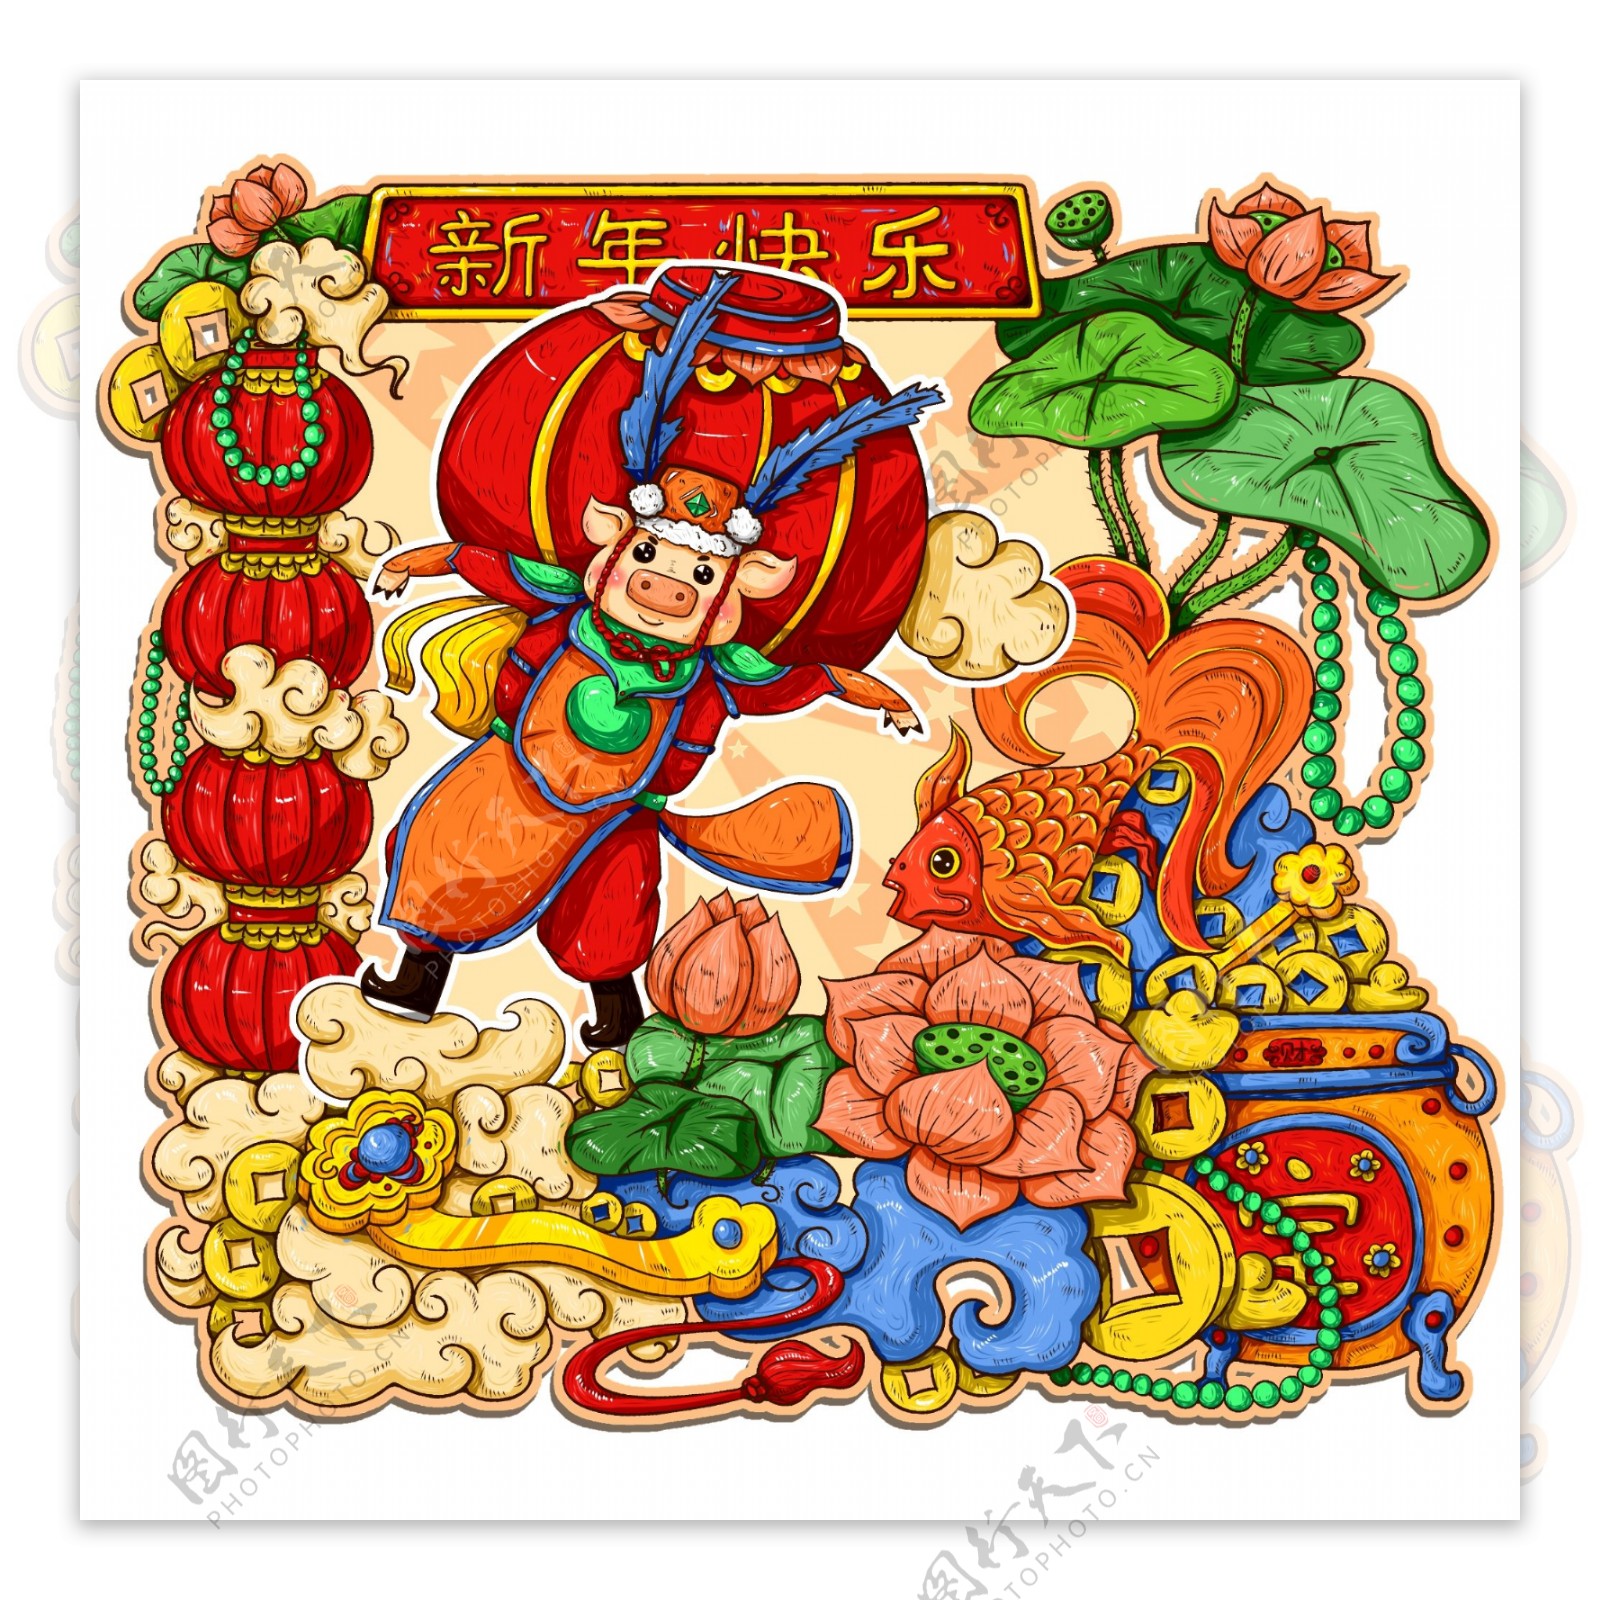 原创手绘中国风年画新年快乐猪年灯笼春节